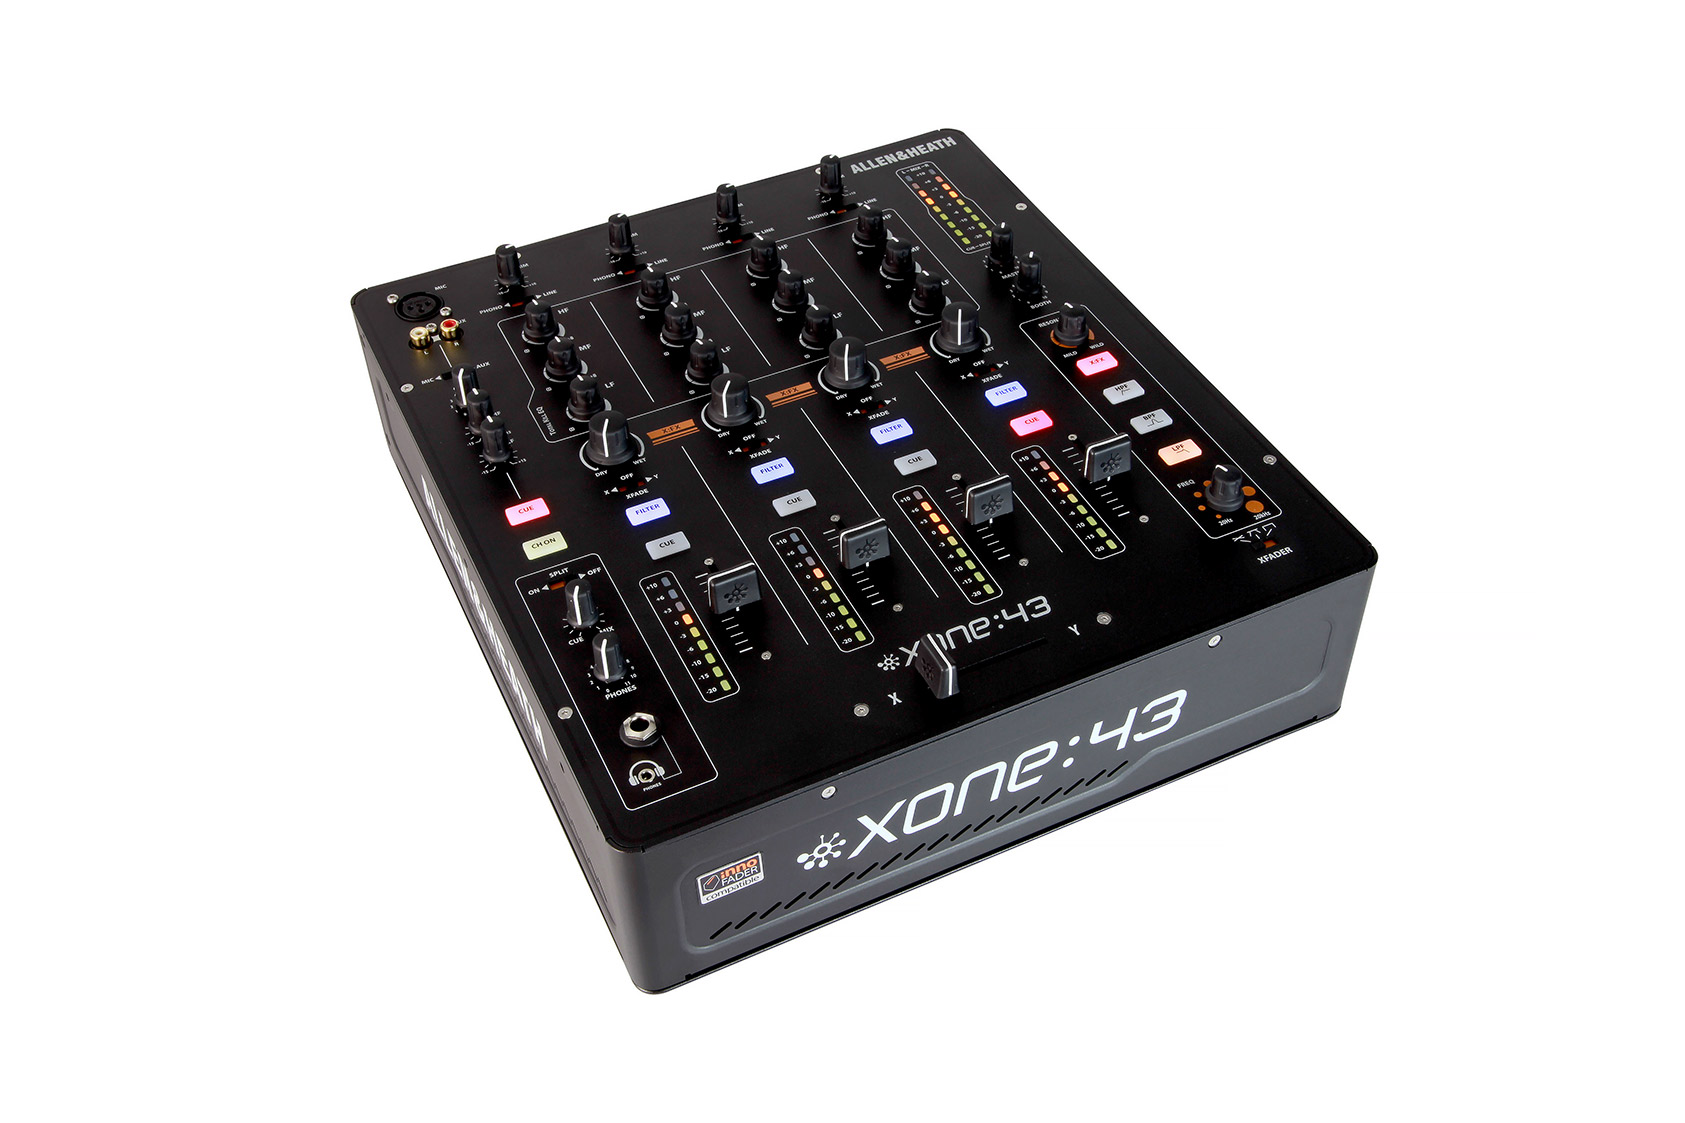  DJ Mixer XONE 43 - Allen&Heath